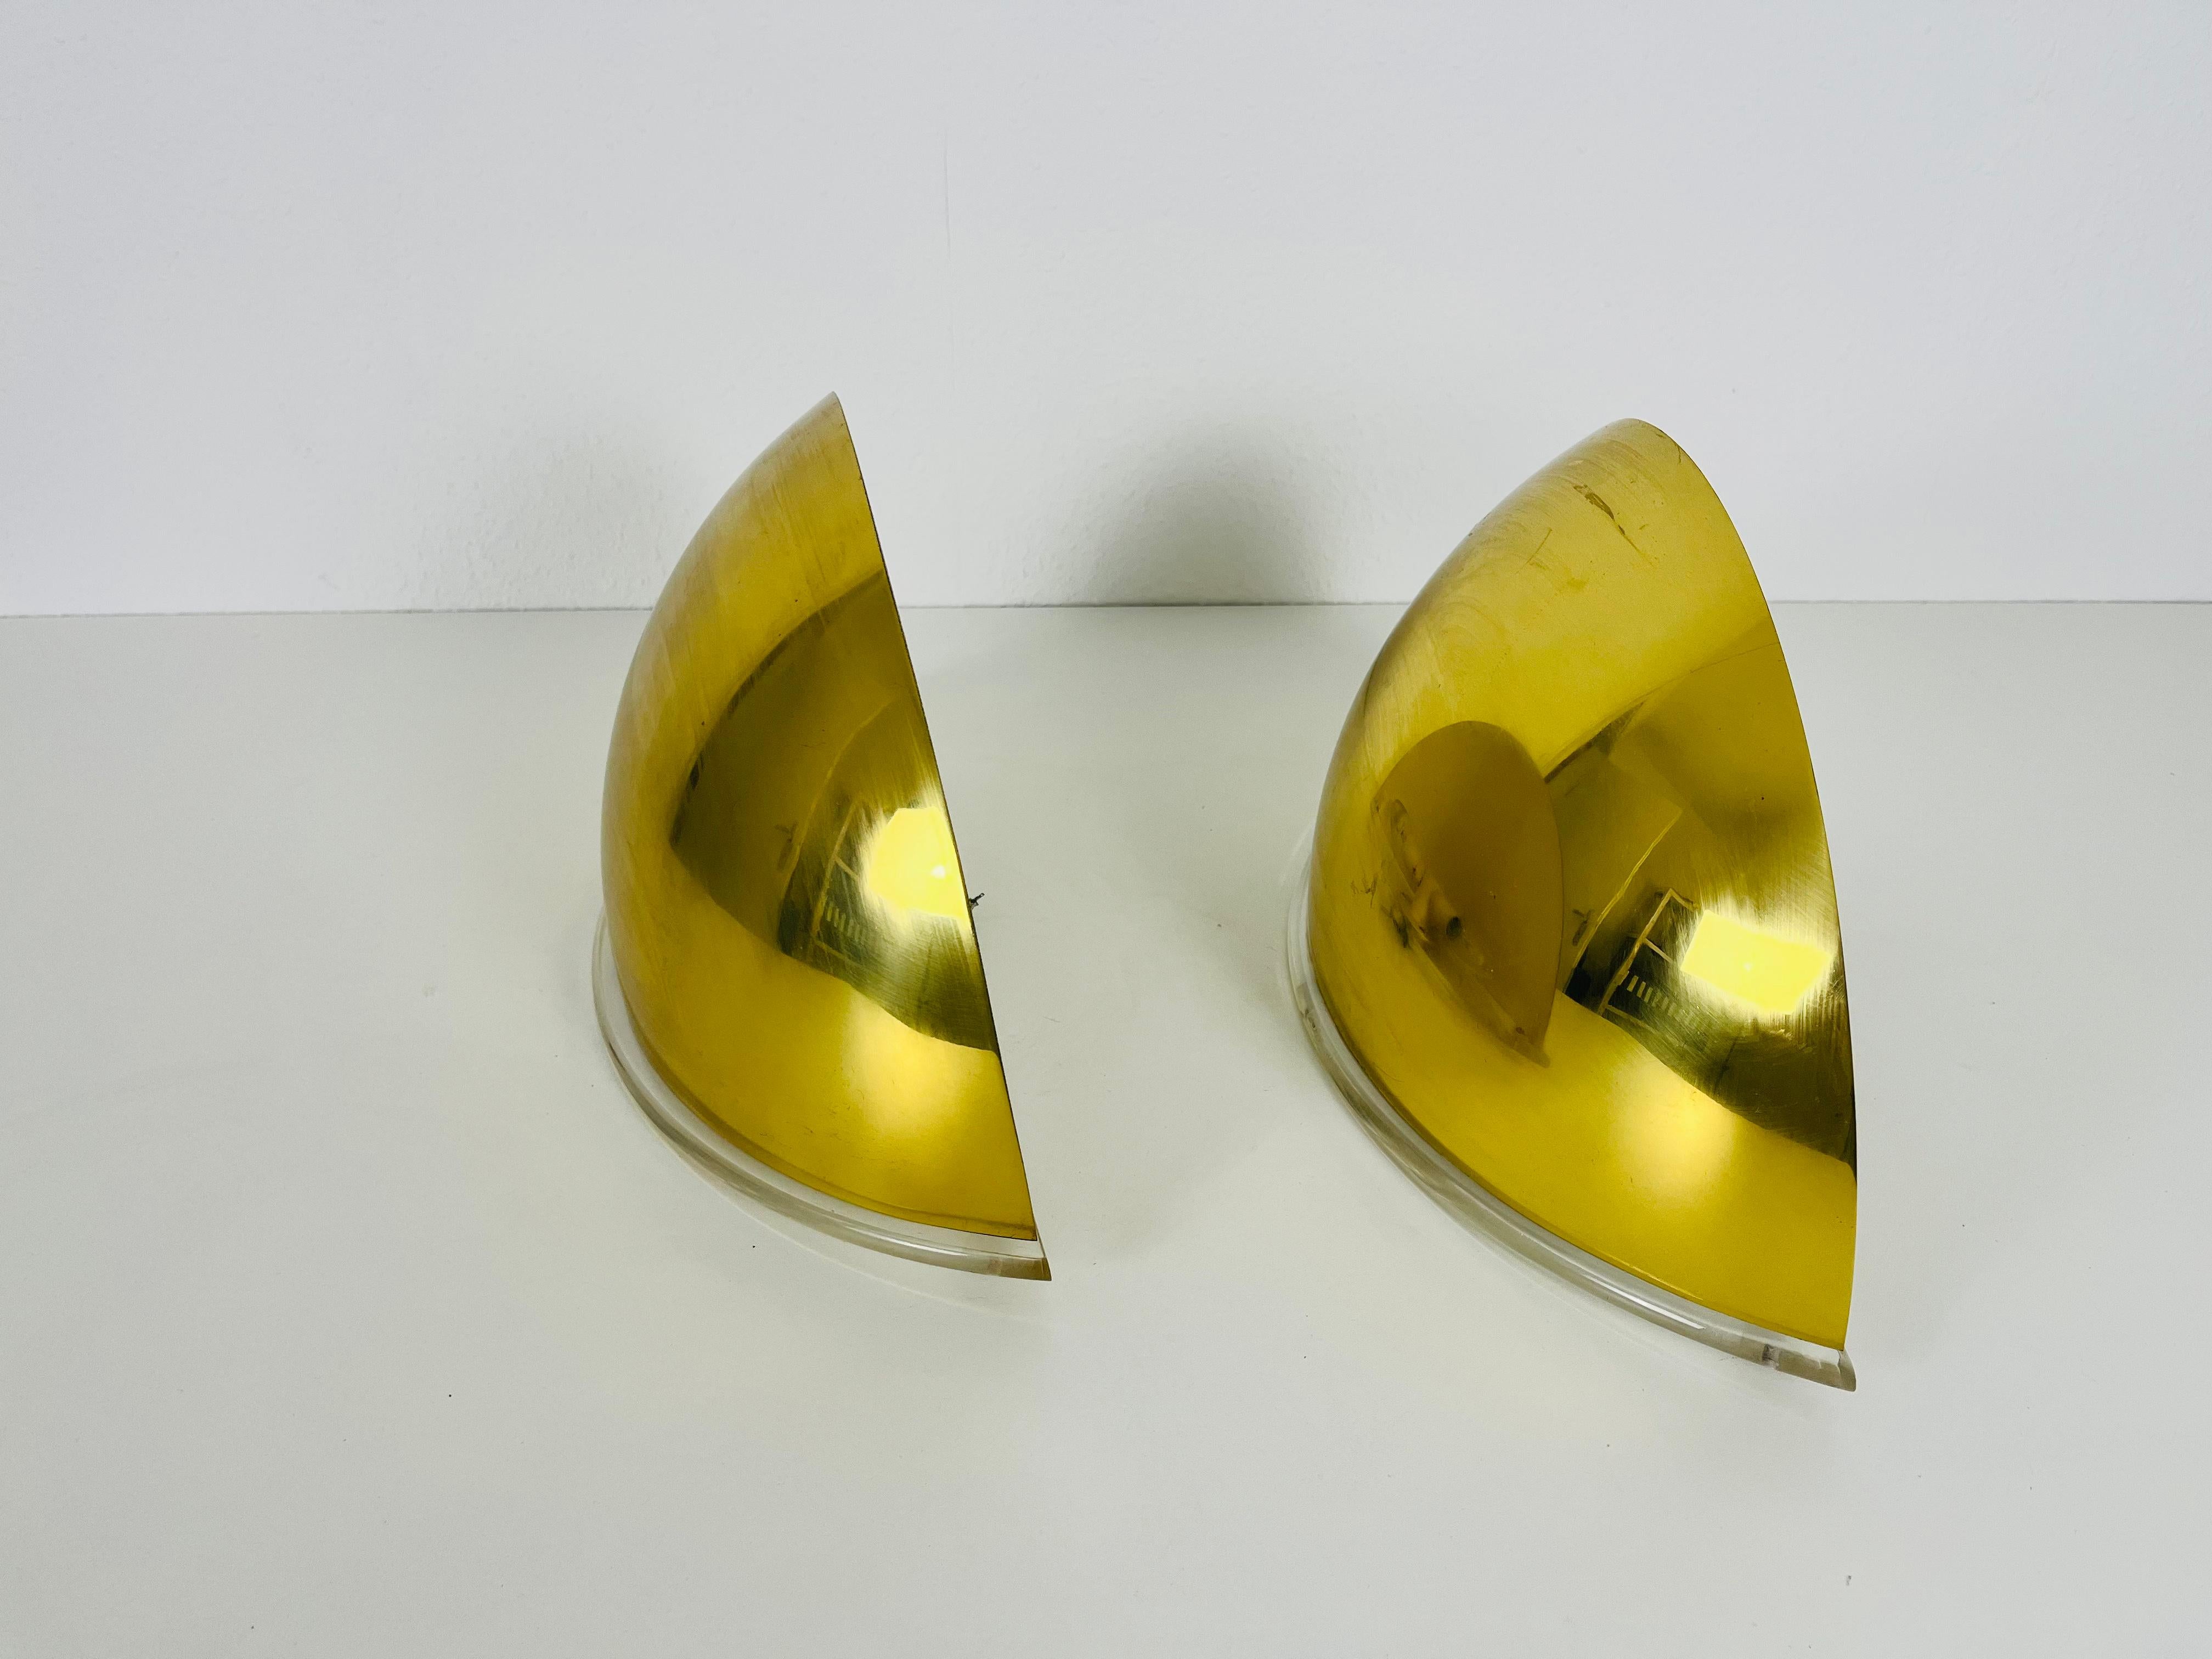 Ein Paar Wandlampen von Florian Schulz, hergestellt in Deutschland in den 1970er Jahren. Sie fasziniert mit ihrem vergoldeten Messingschirm und dem Plexiglasfuß.

Die Leuchte benötigt E14-Glühbirnen. Funktioniert sowohl mit 110/220 V. Guter alter